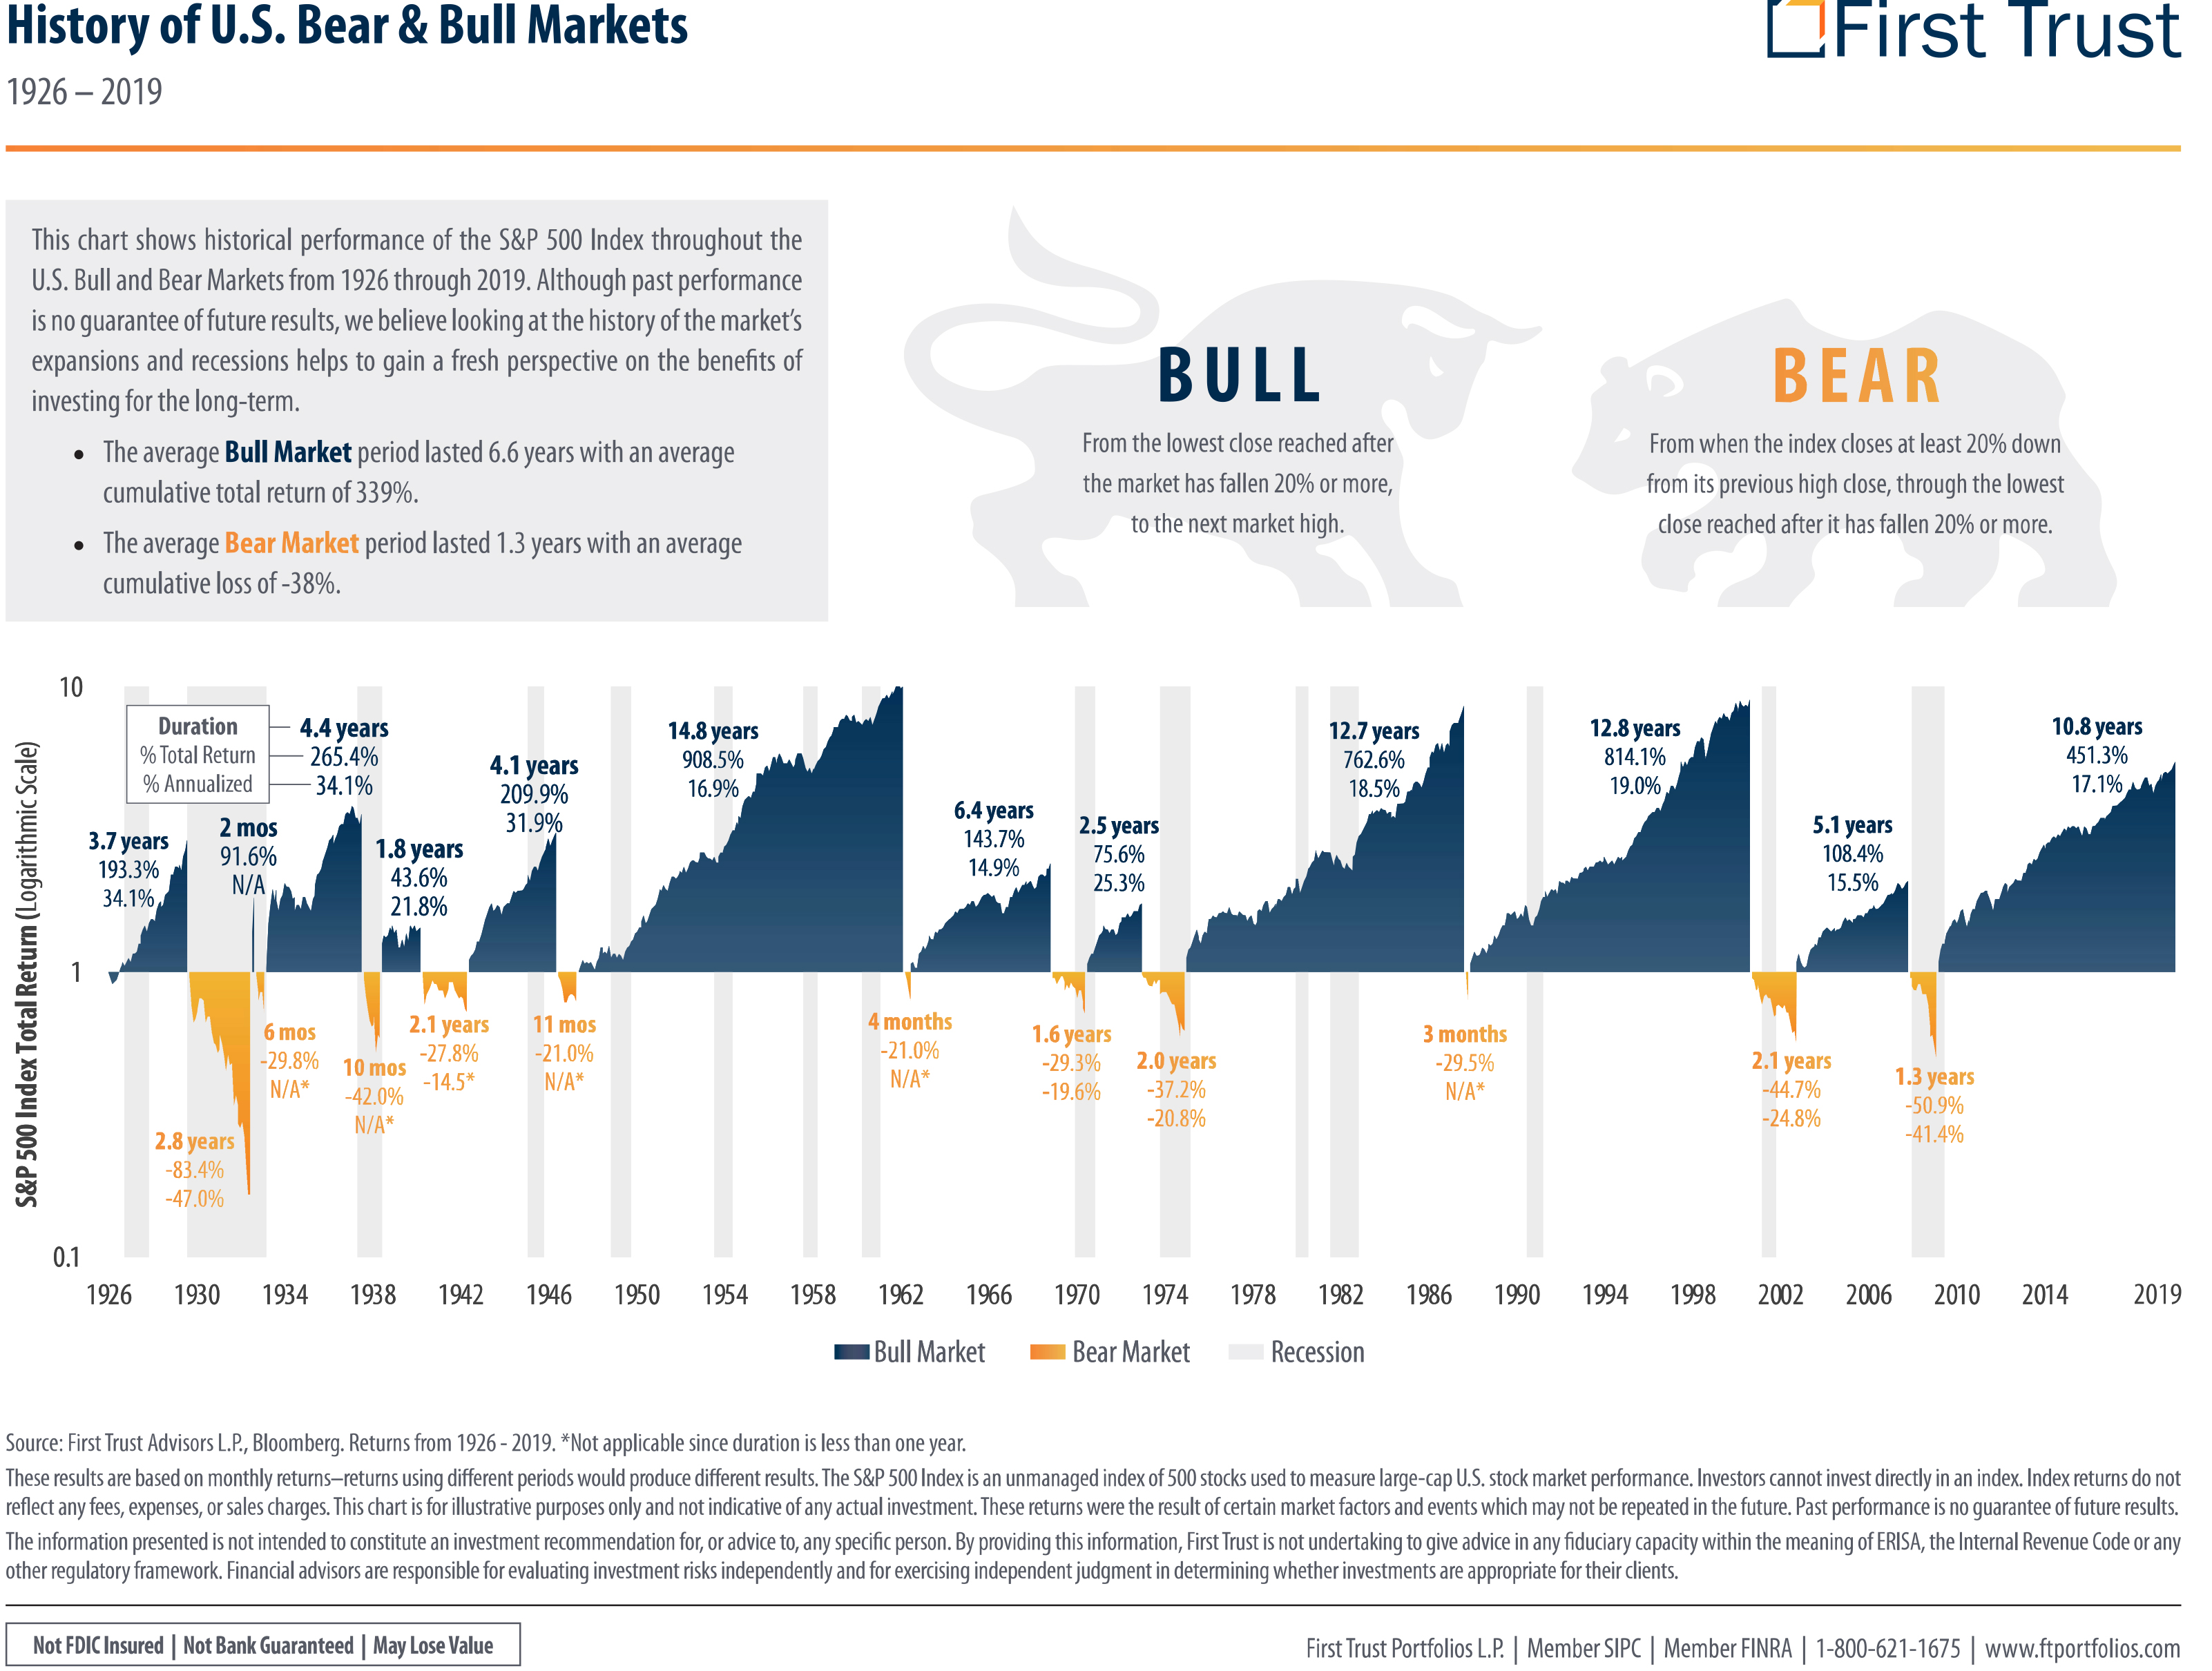 History of Bull and Bear Markets